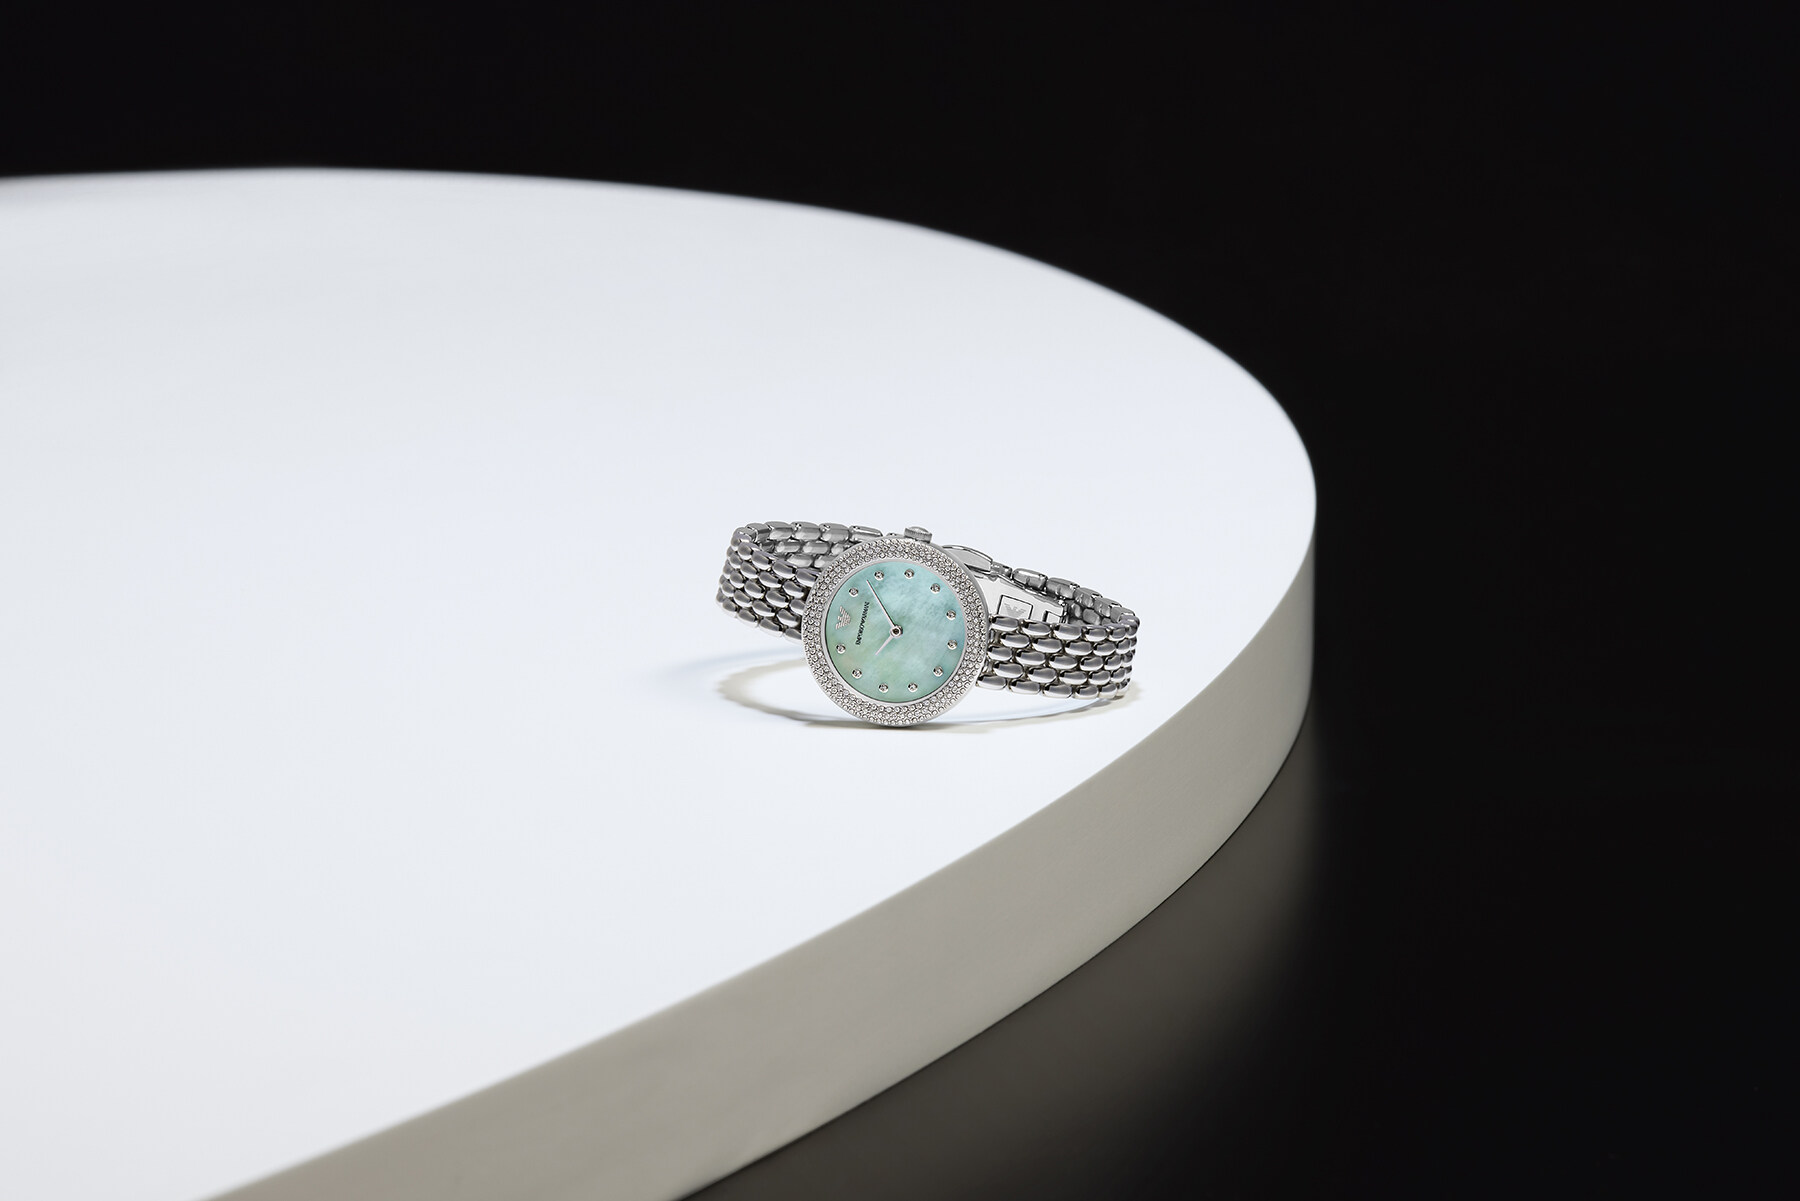 另一款精鋼腕錶採用了個性十足的藍色珍珠貝母錶面盤，配上細緻拋光